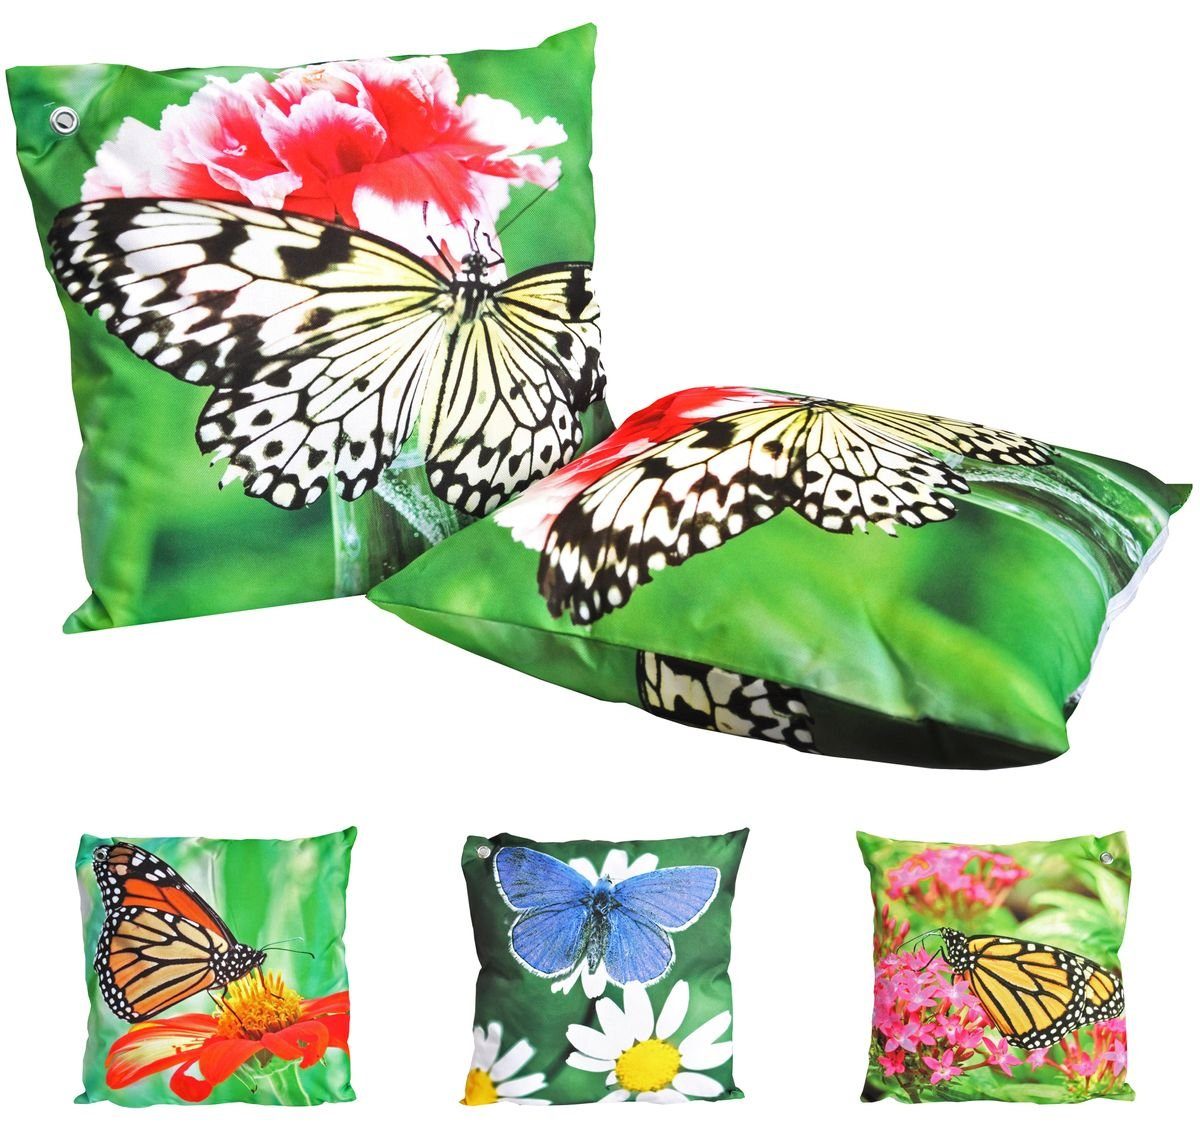 JACK Dekokissen Outdoor Lounge Kissen 45x45cm mit Schmetterling Motiv Dekokissen, wasserfestes Sitzkissen inkl. Füllung für Ihren Garten Weiß